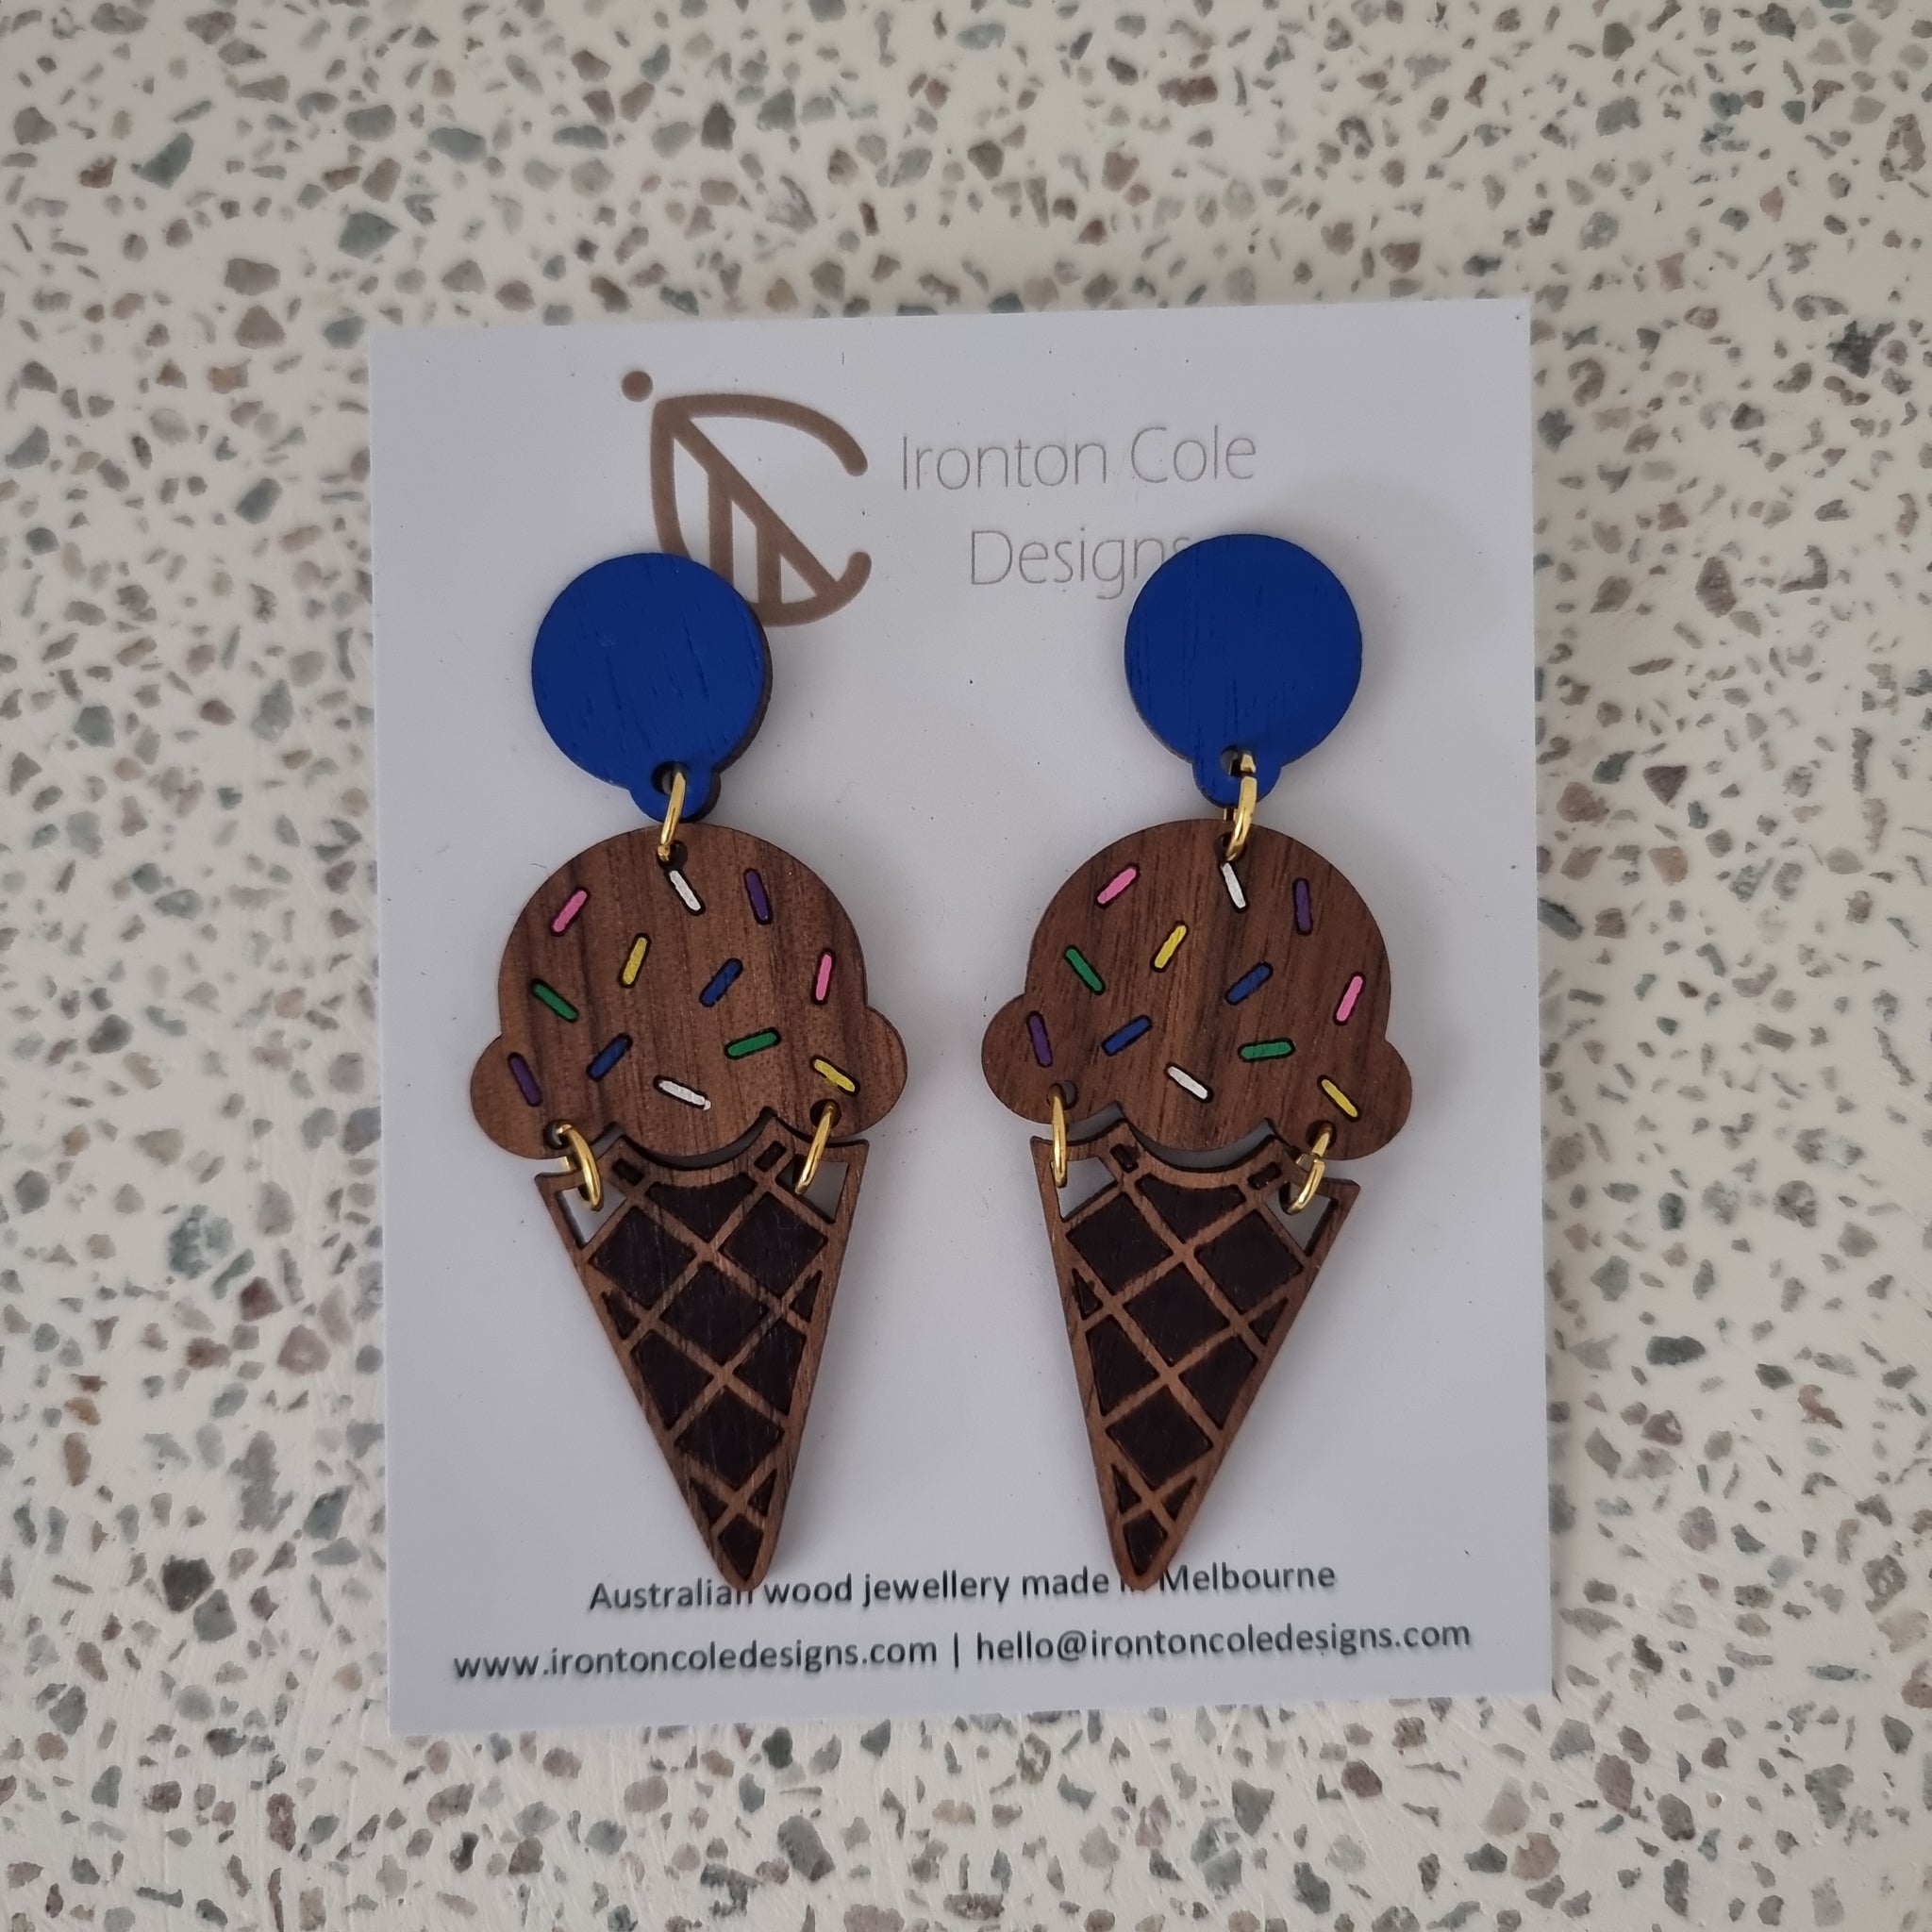 Ice cream wooden earrings